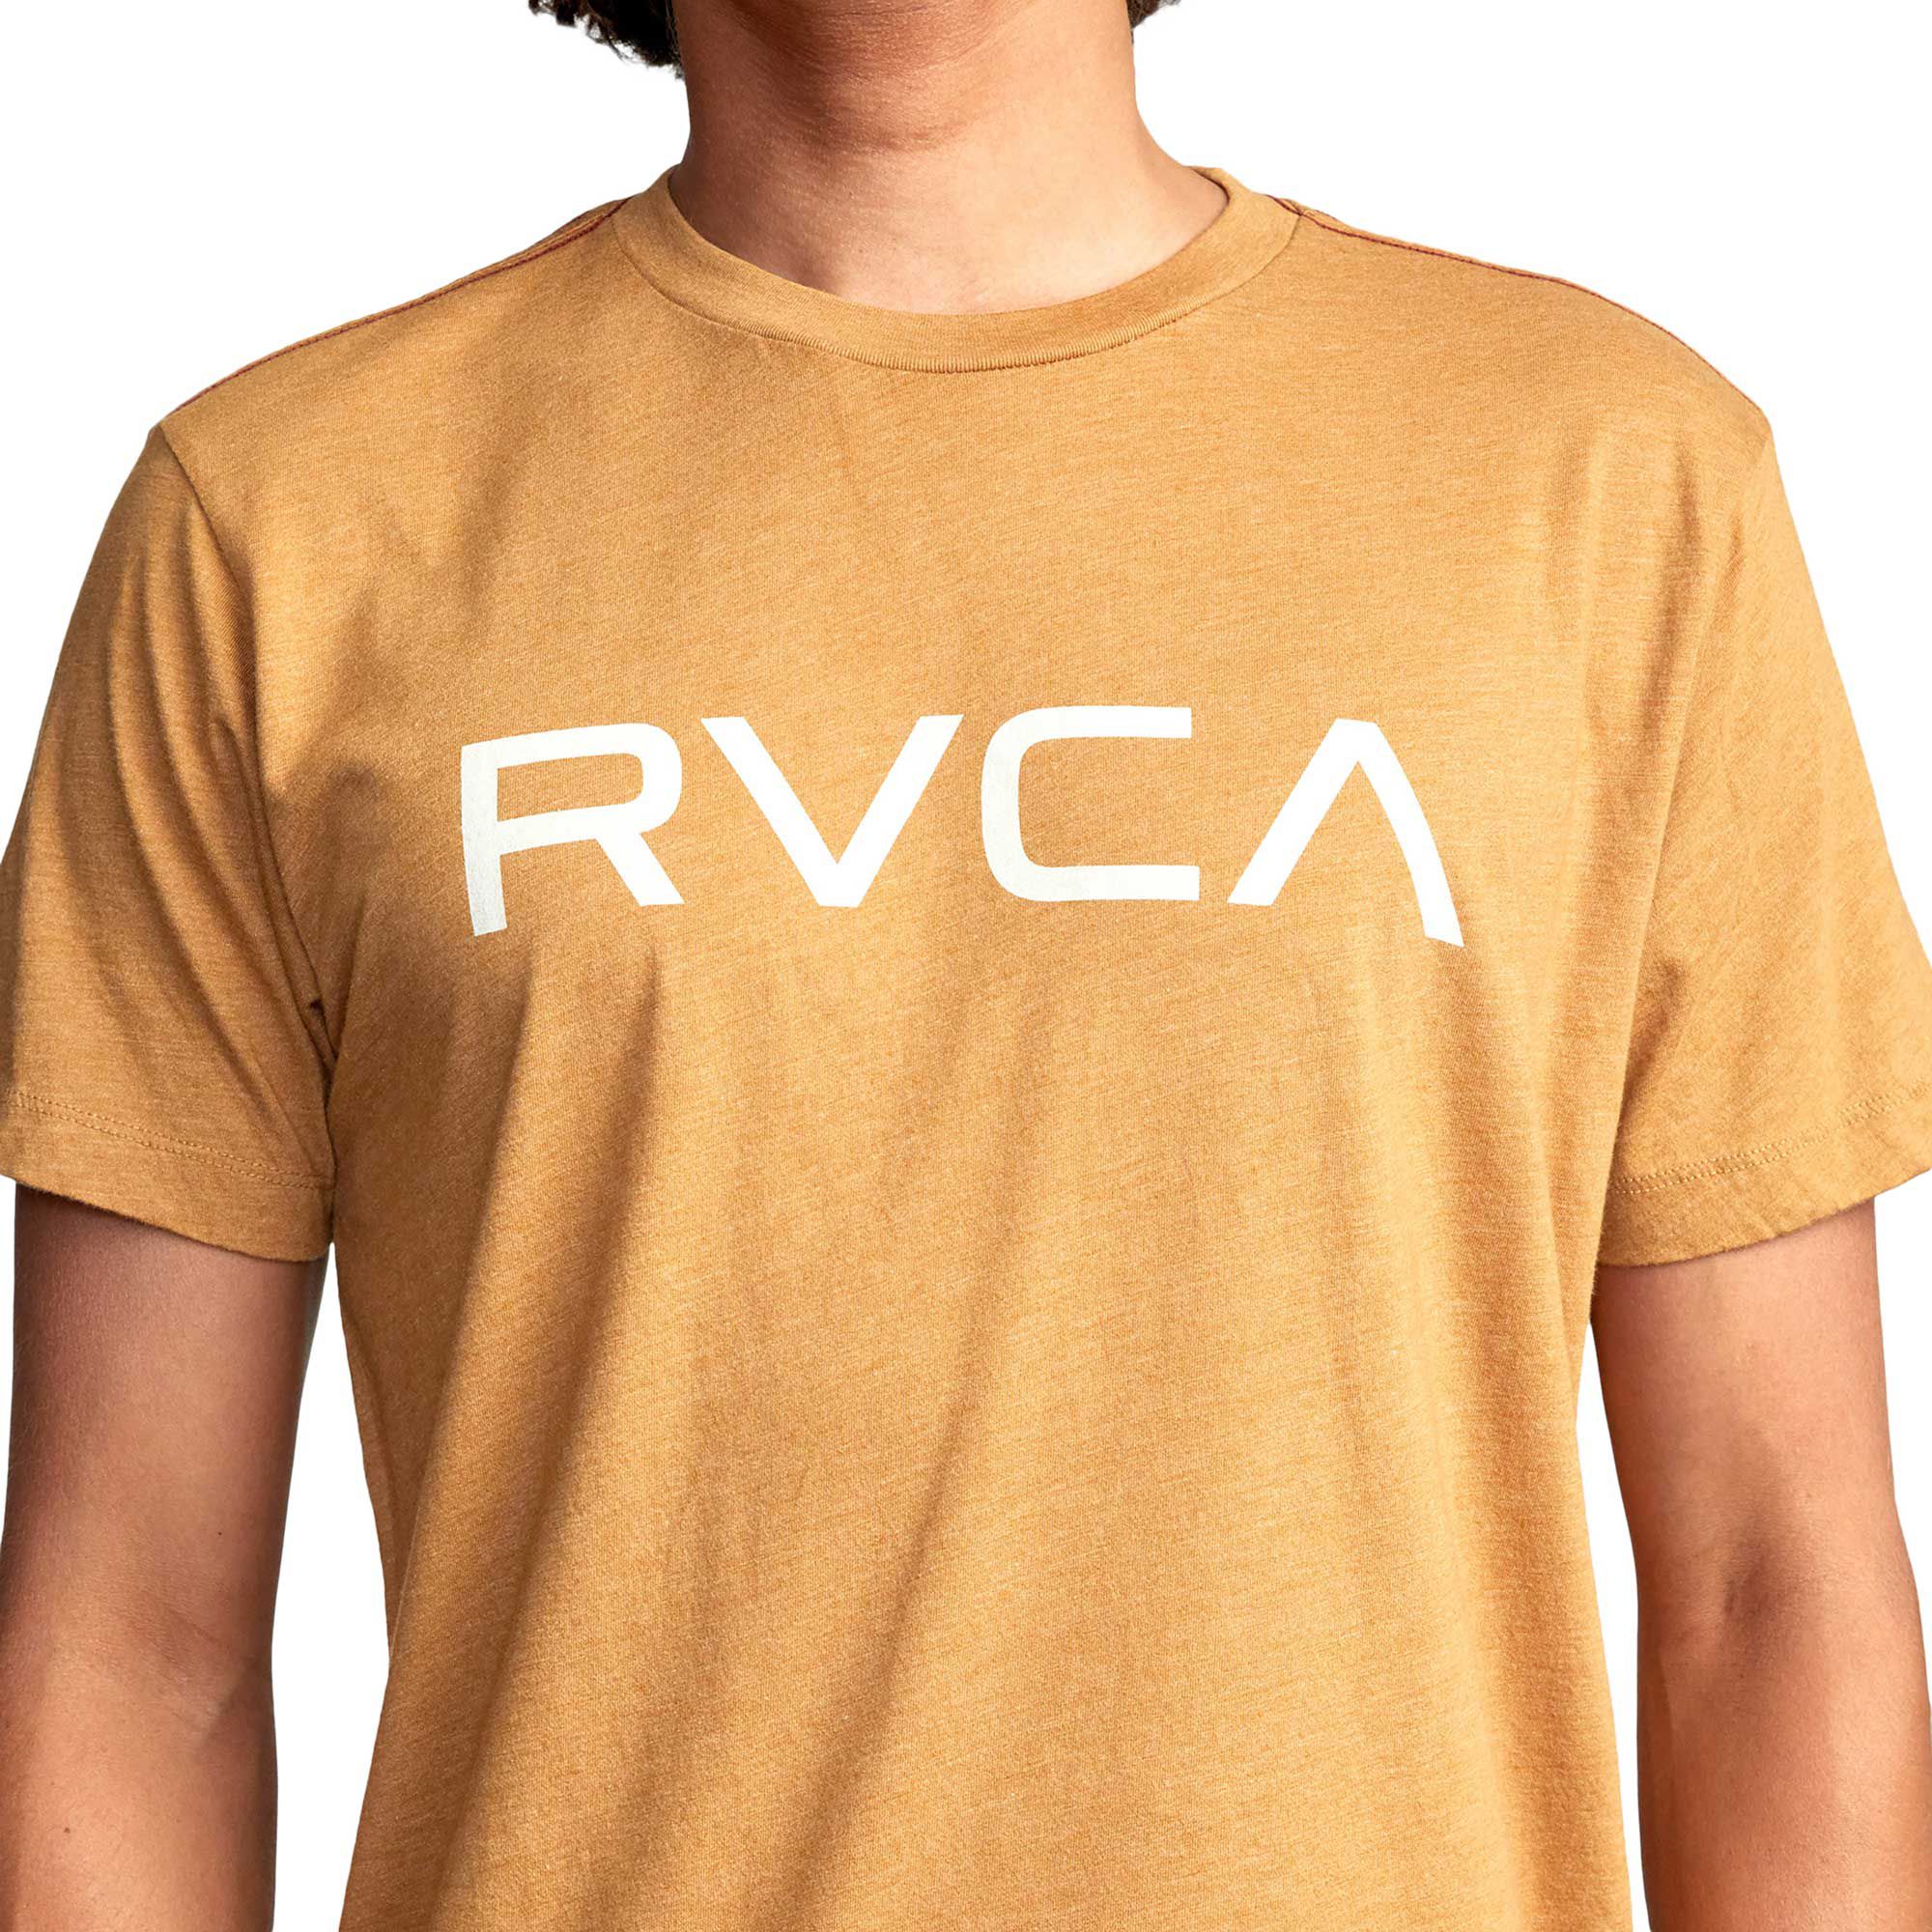 RVCA Men's Big RVCA Short Sleeve Graphic T-Shirt